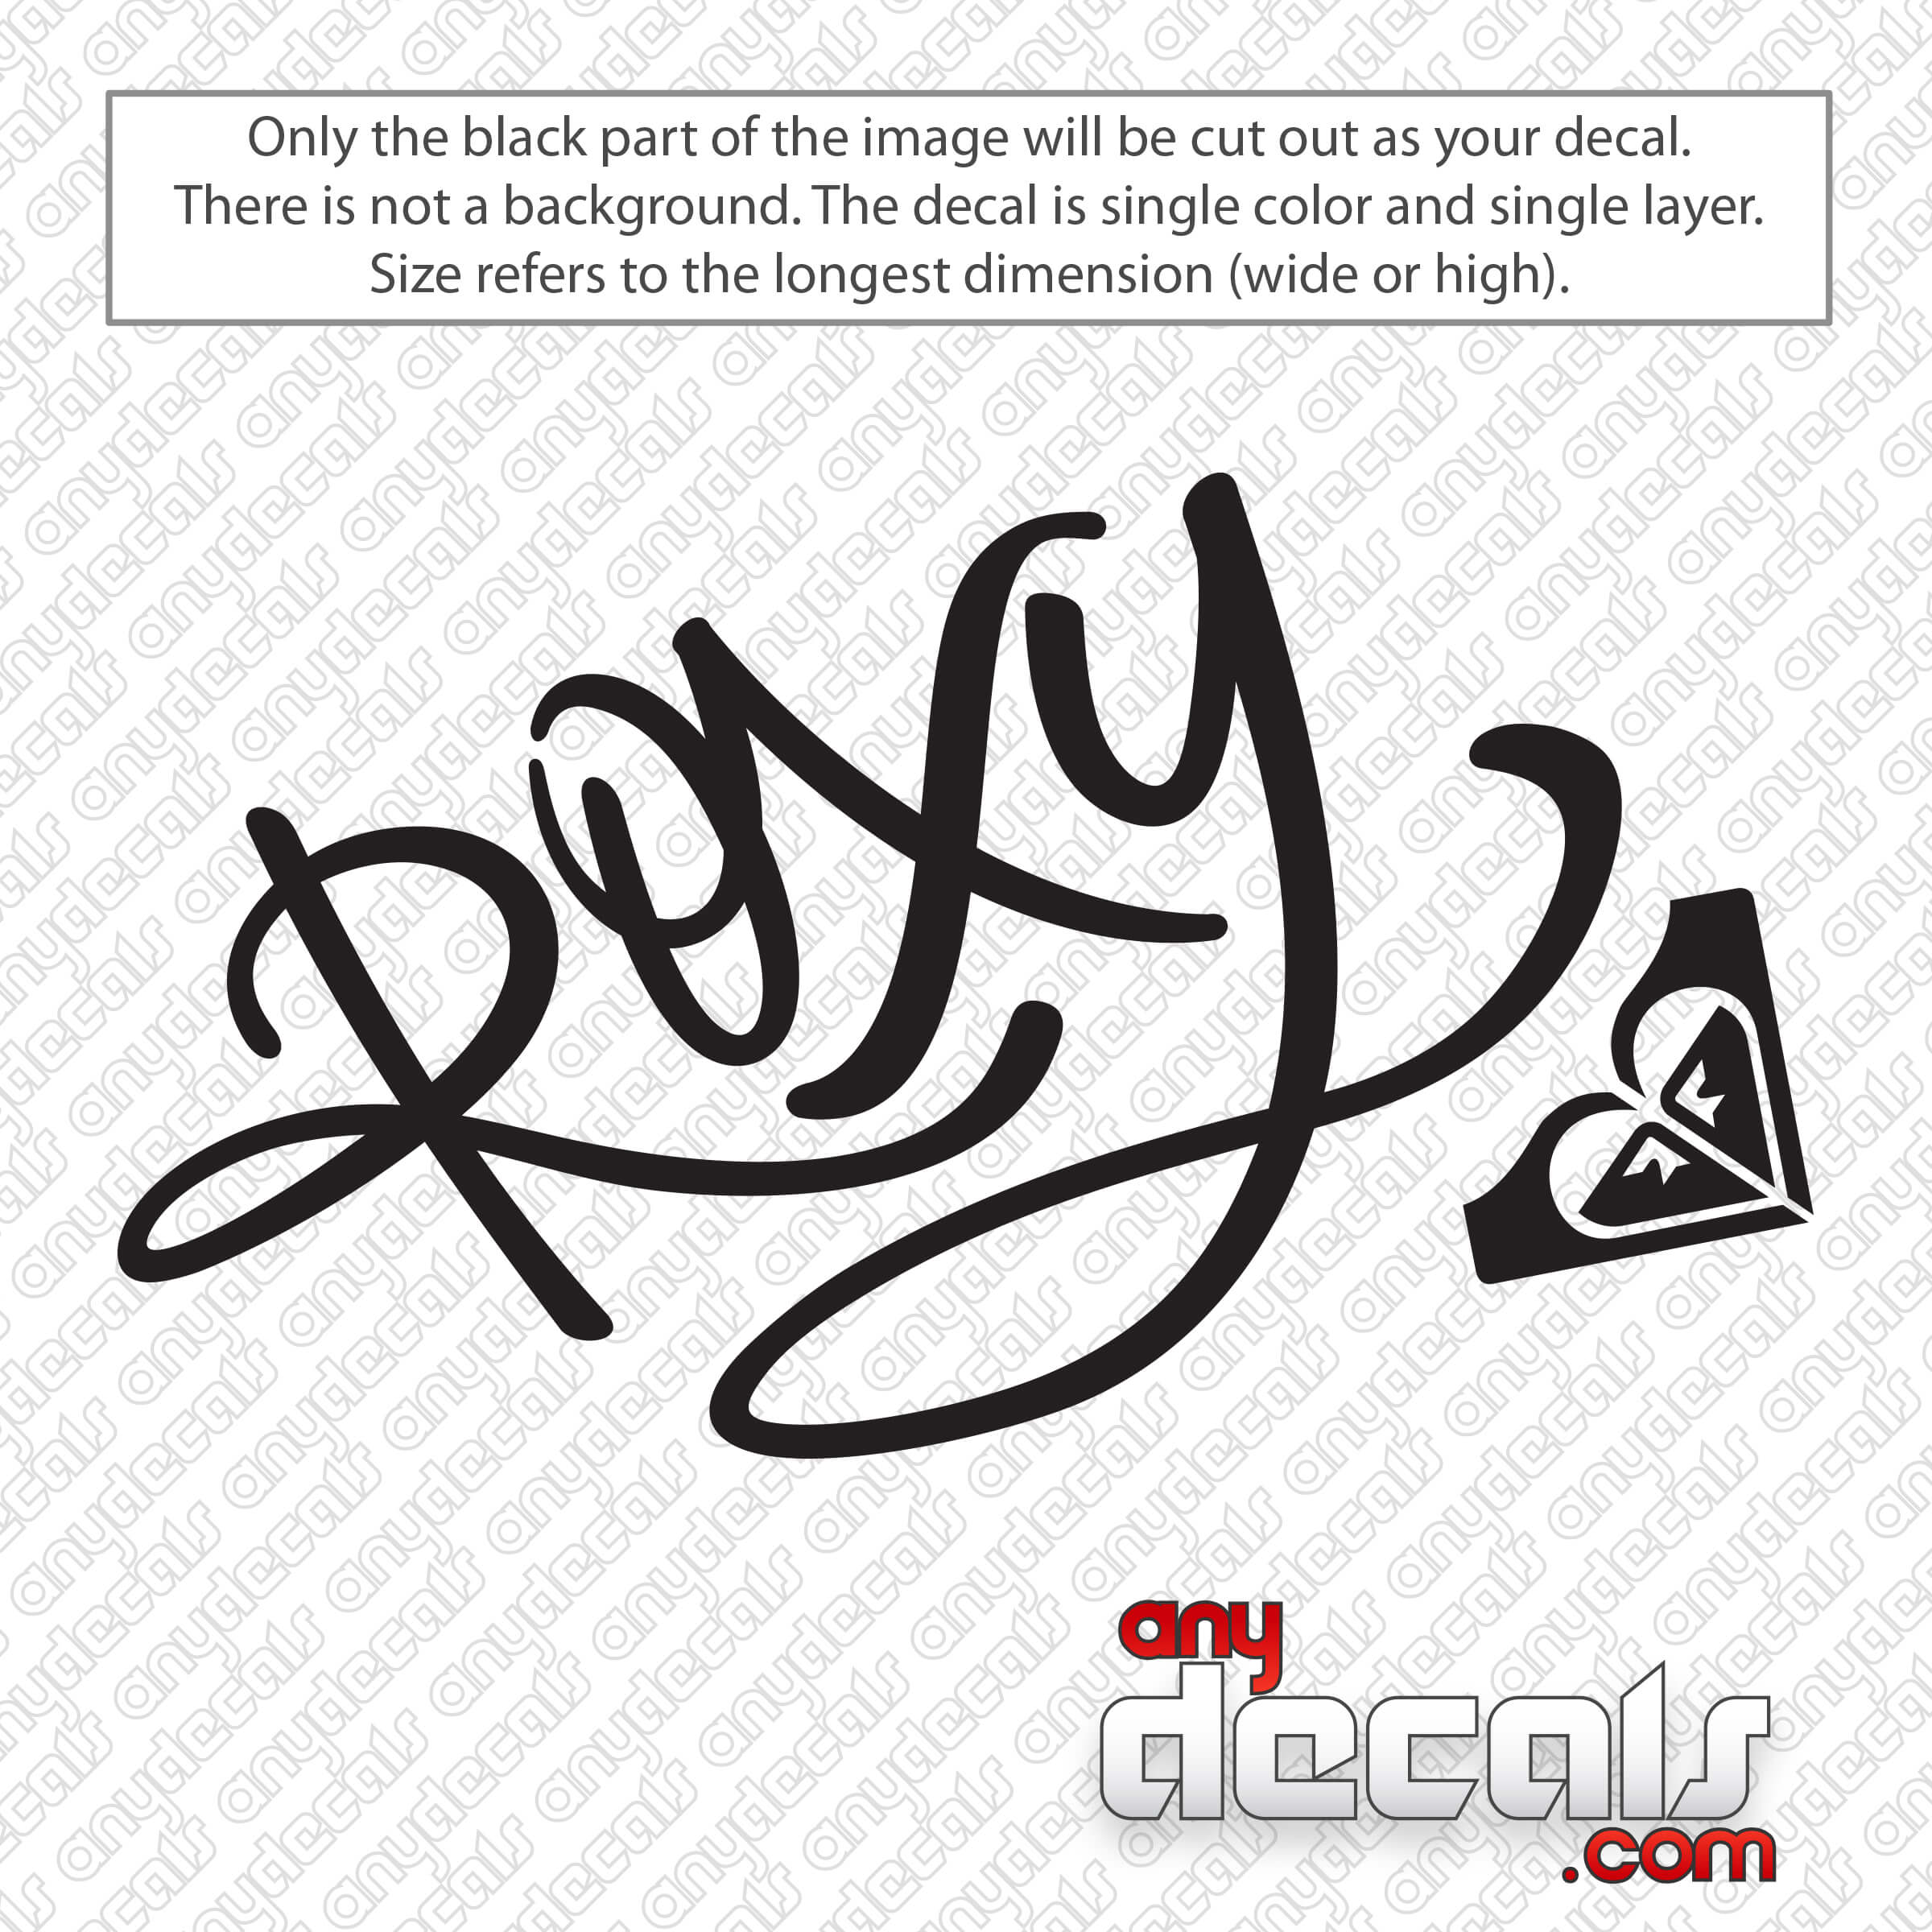 Gewend aan Heel spons Roxy Script Logo Decal Sticker - AnyDecals.com